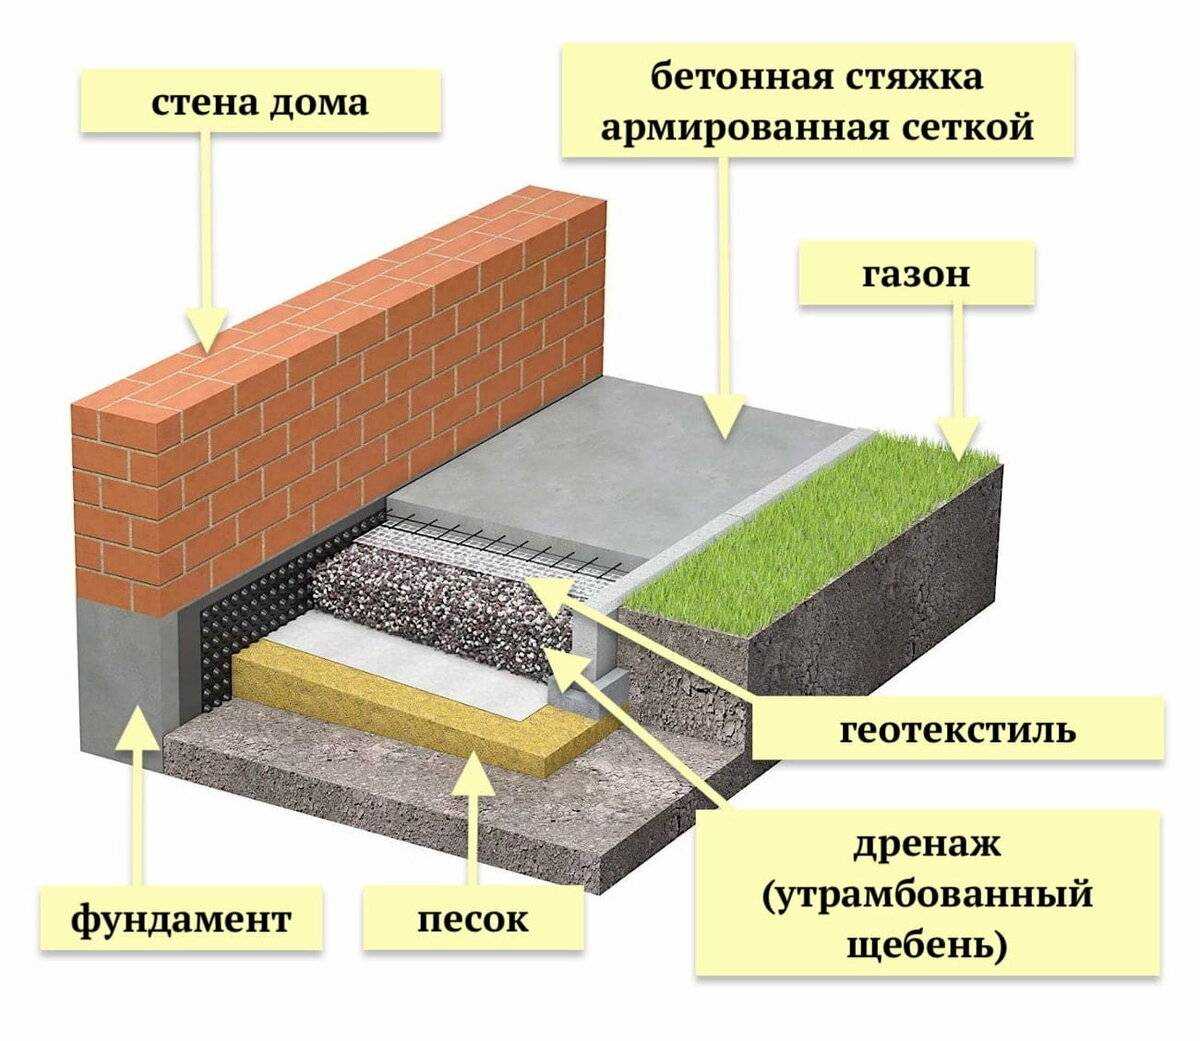 2. Пригодность для бетона